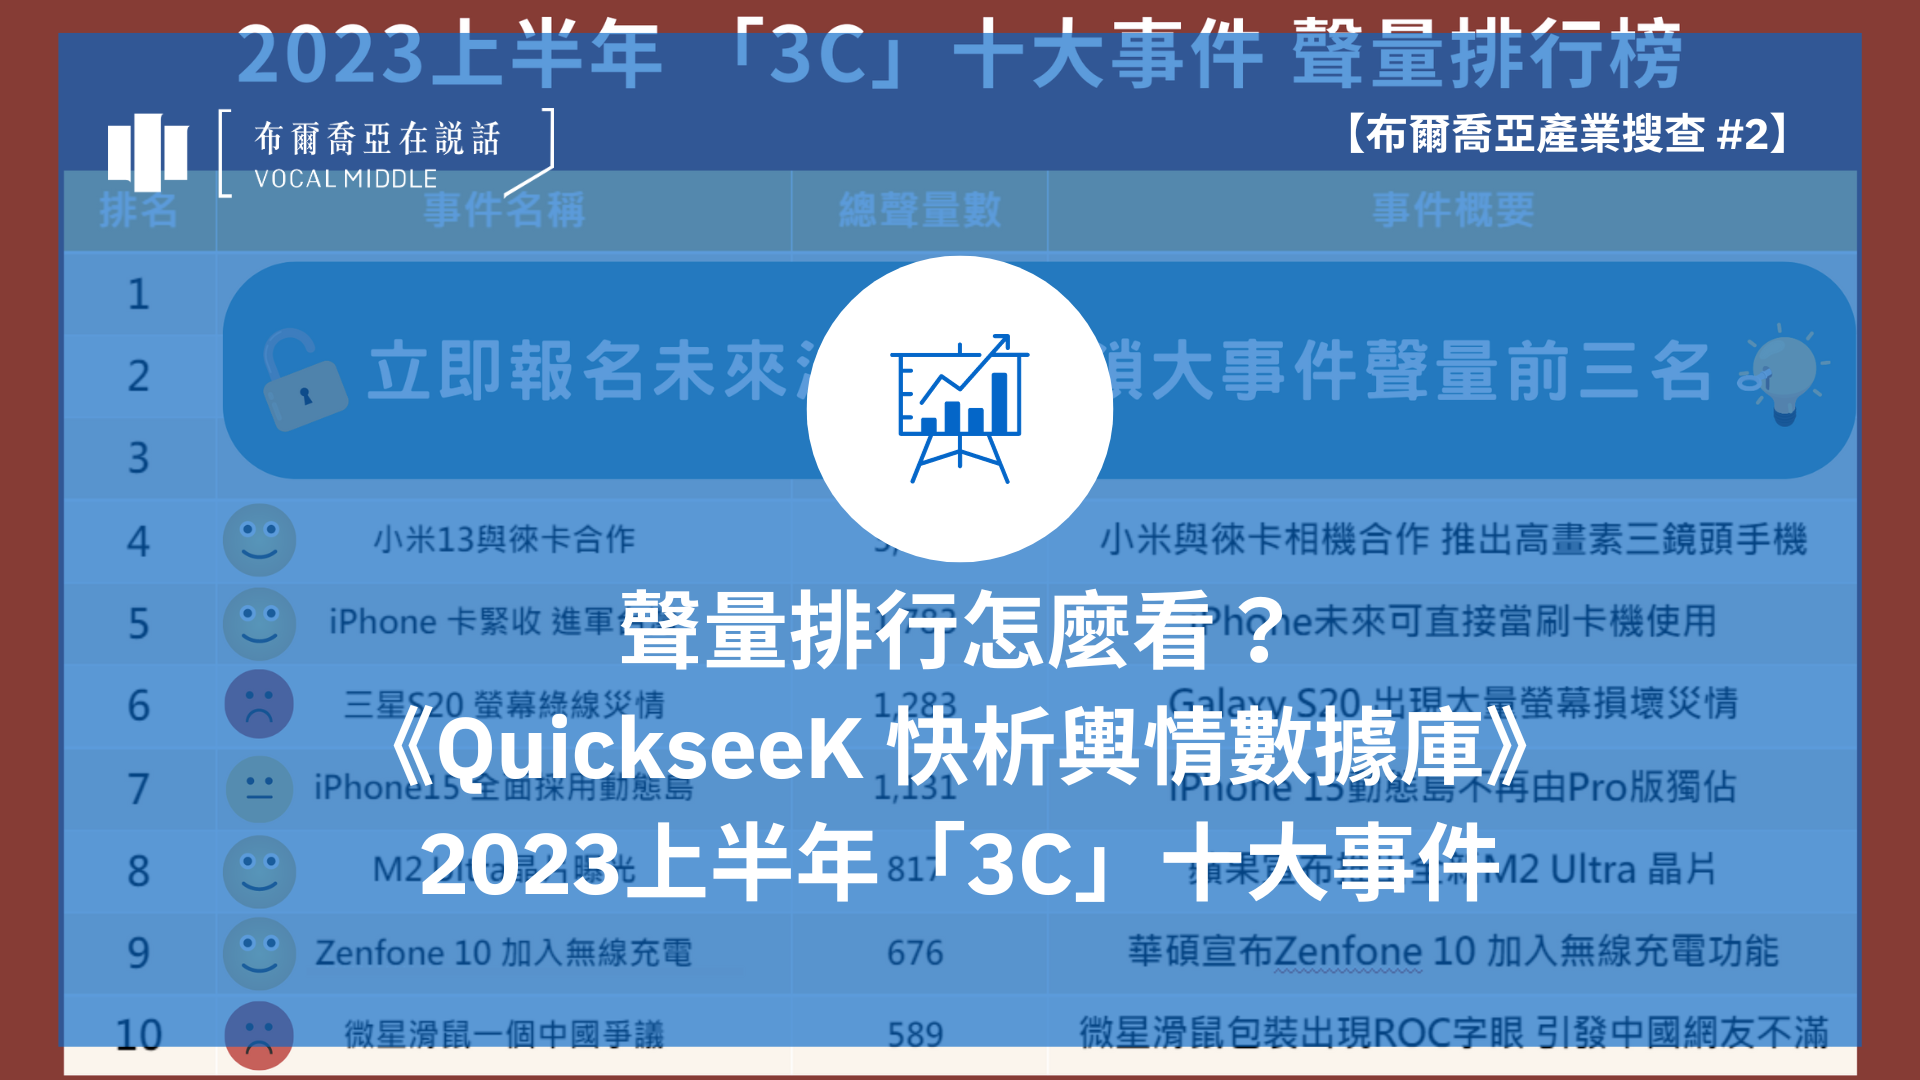 【布爾喬亞產業搜查 #2】聲量排行怎麼看？ 《QuickseeK》2023上半年「3C」十大事件